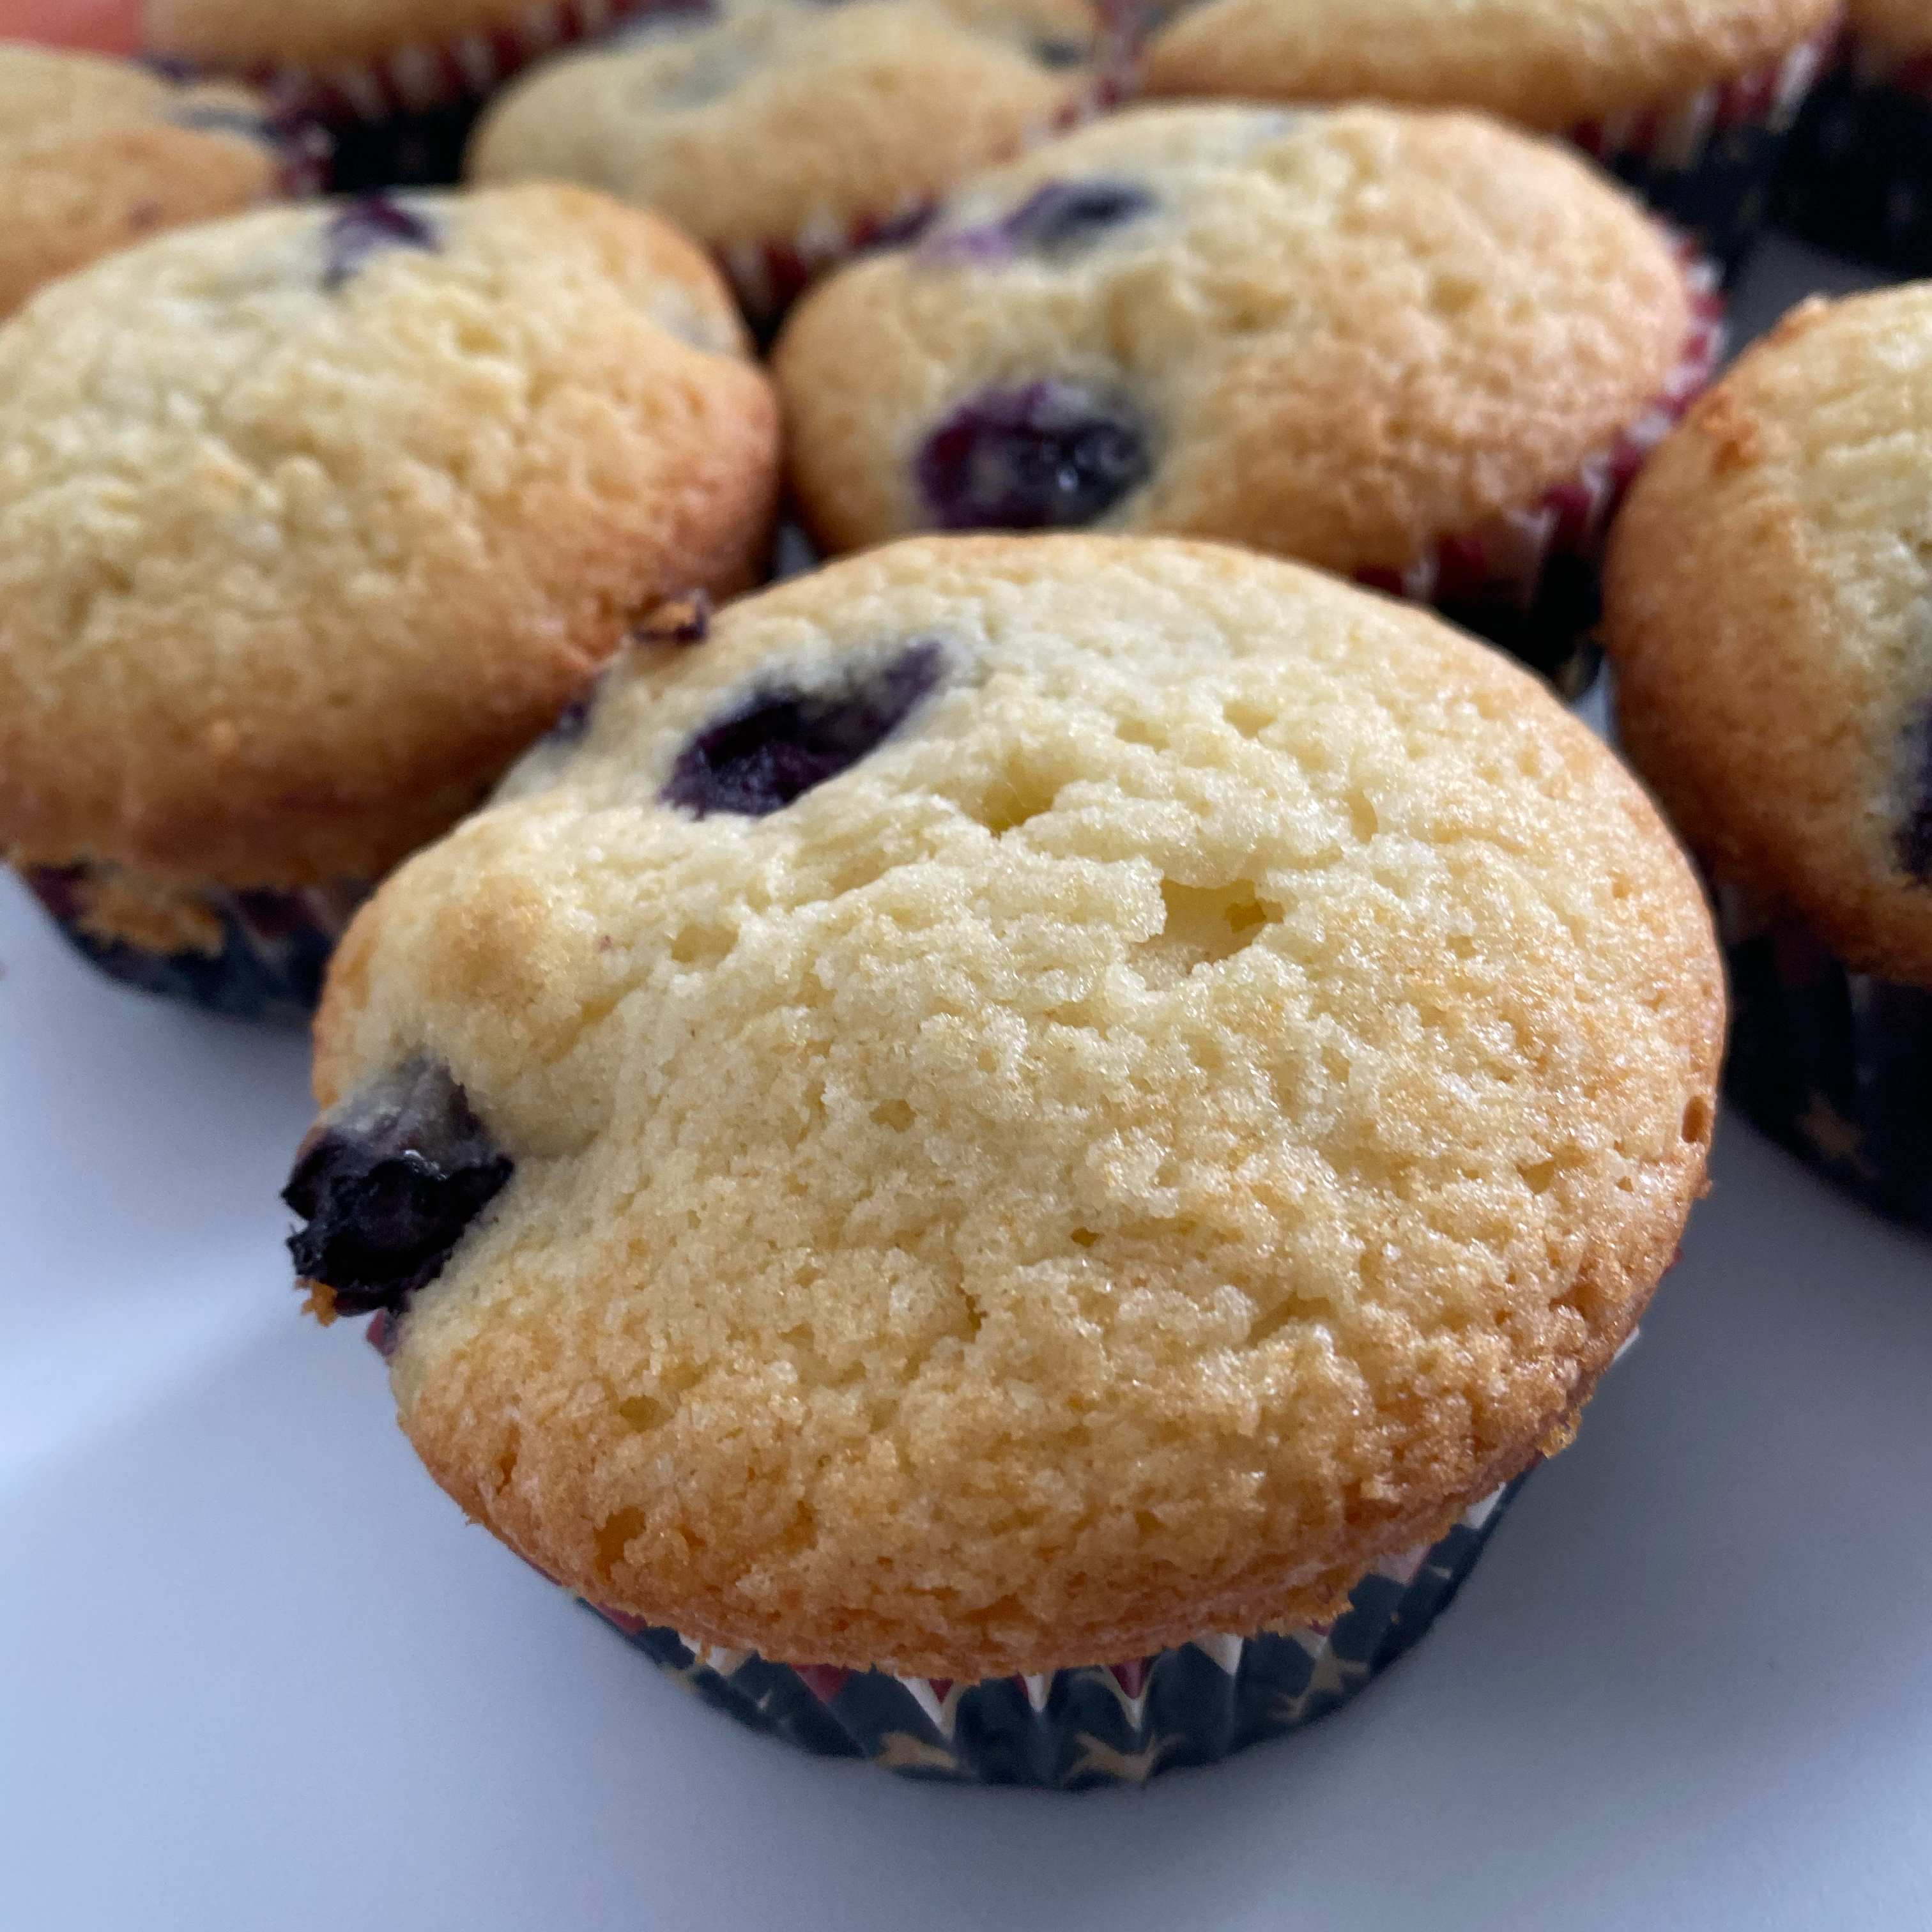 Aunt Blanche's Blueberry Muffins karenq726